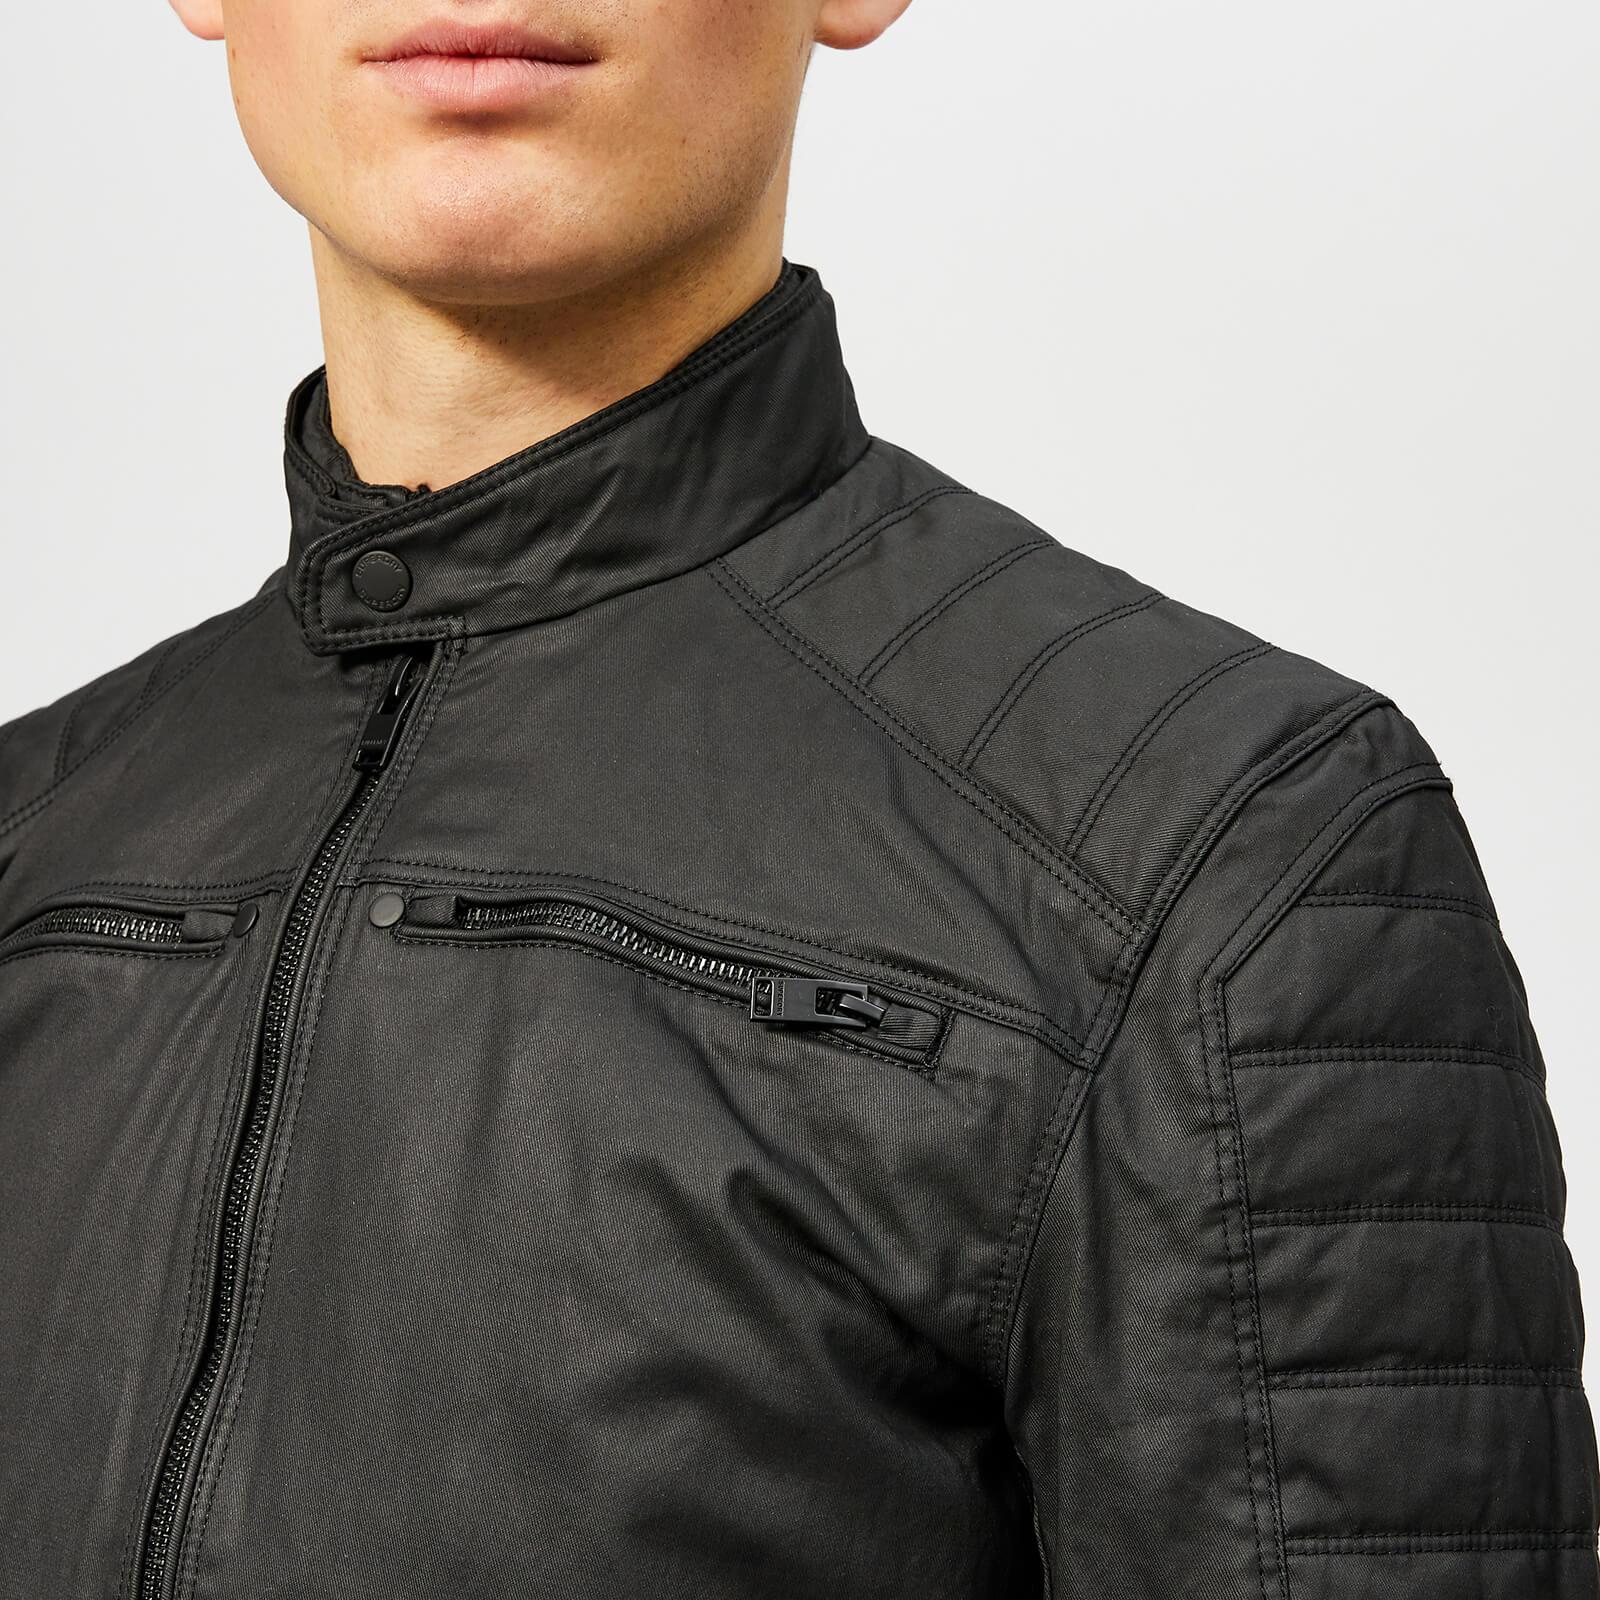 Superdry Cotton Carbon Biker Jacket in Black for Men - Lyst